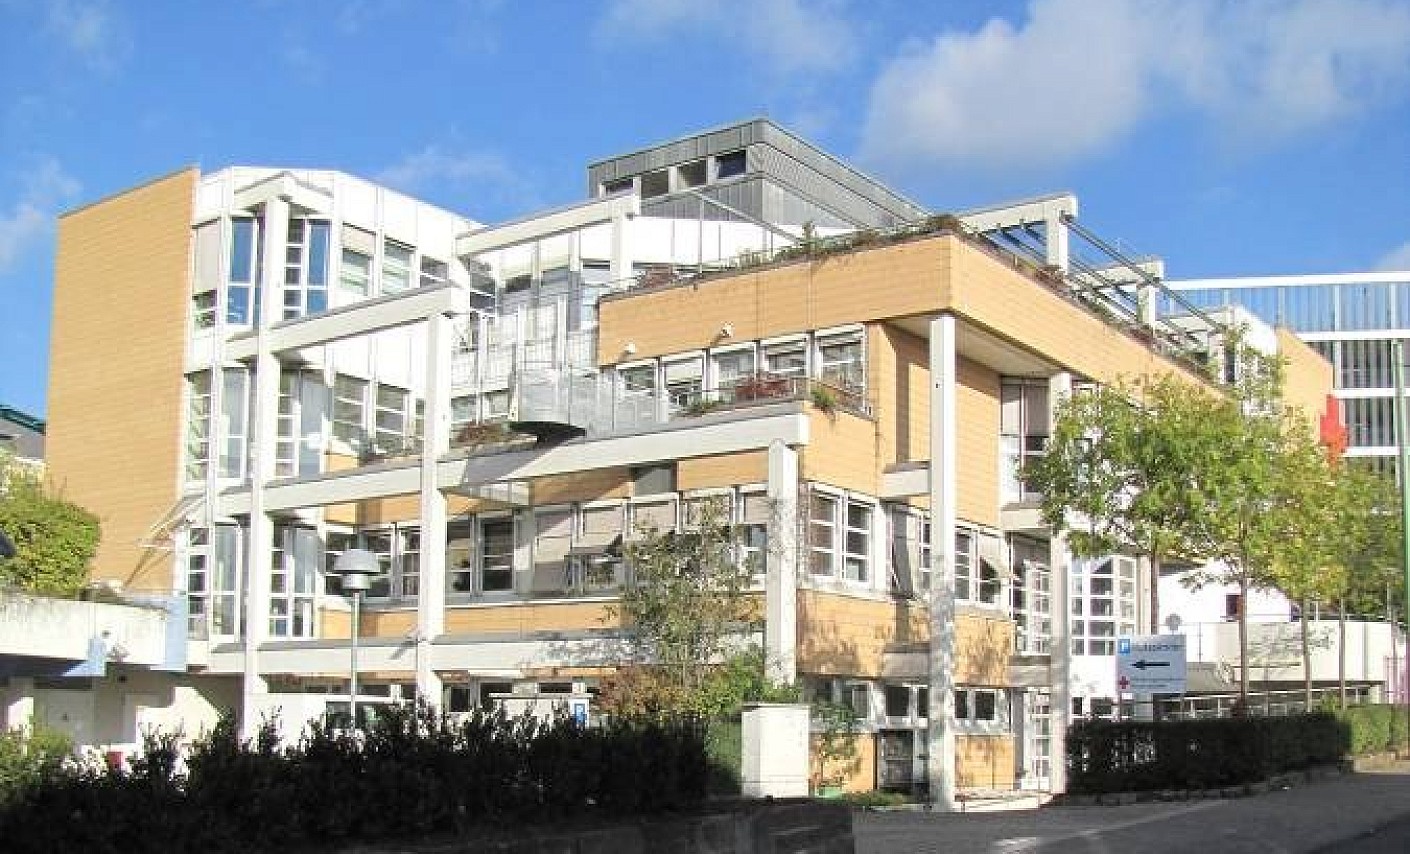 Institut Kassel